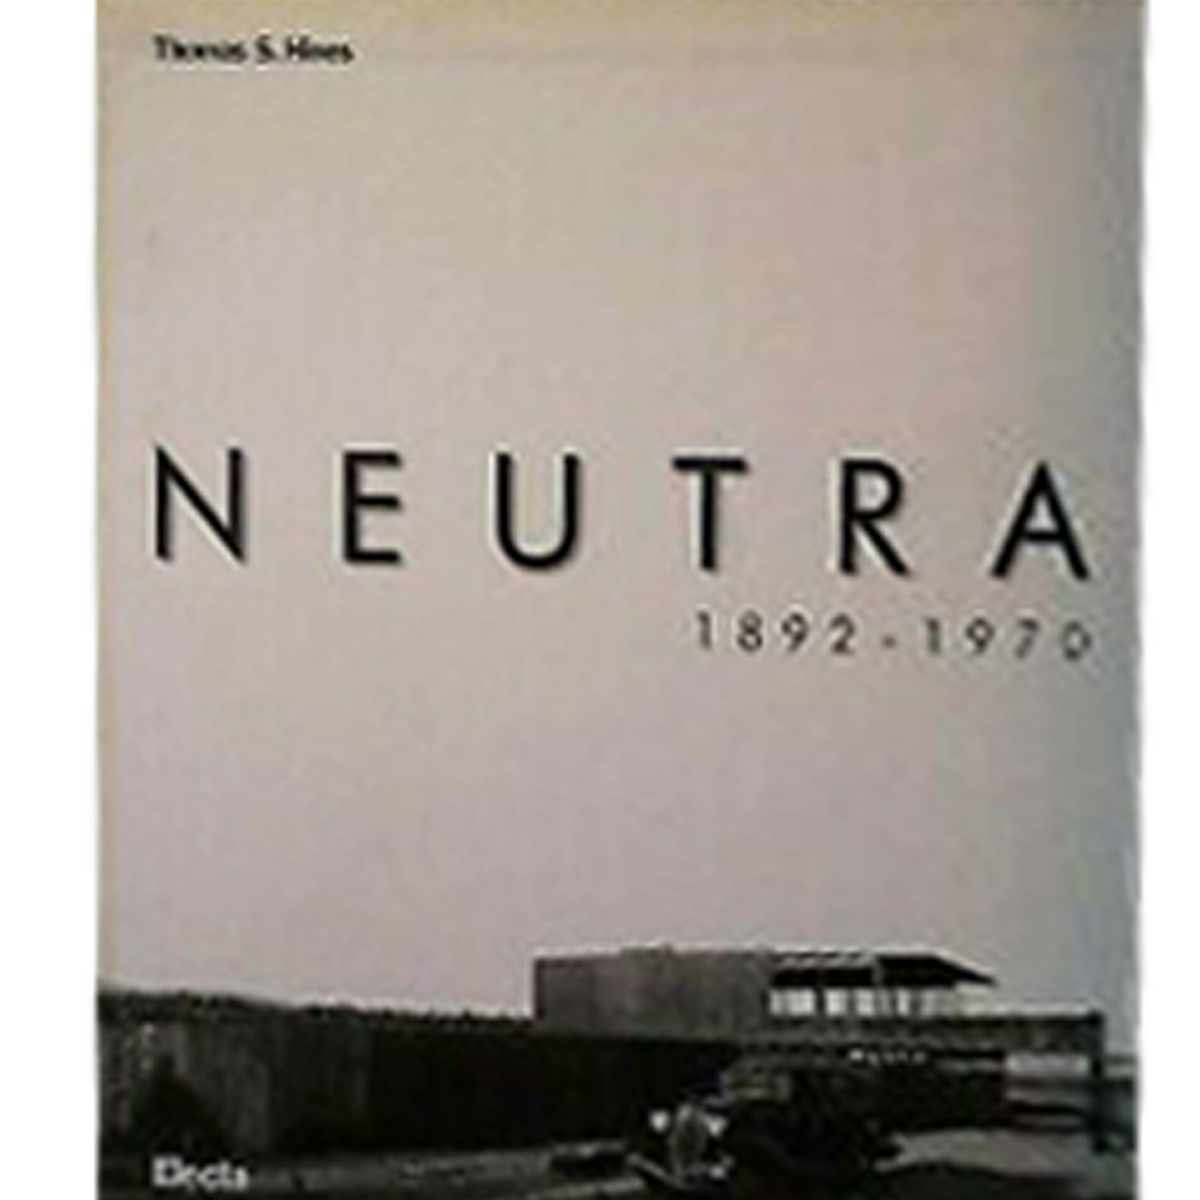 Richard Neutra, 1892-1970